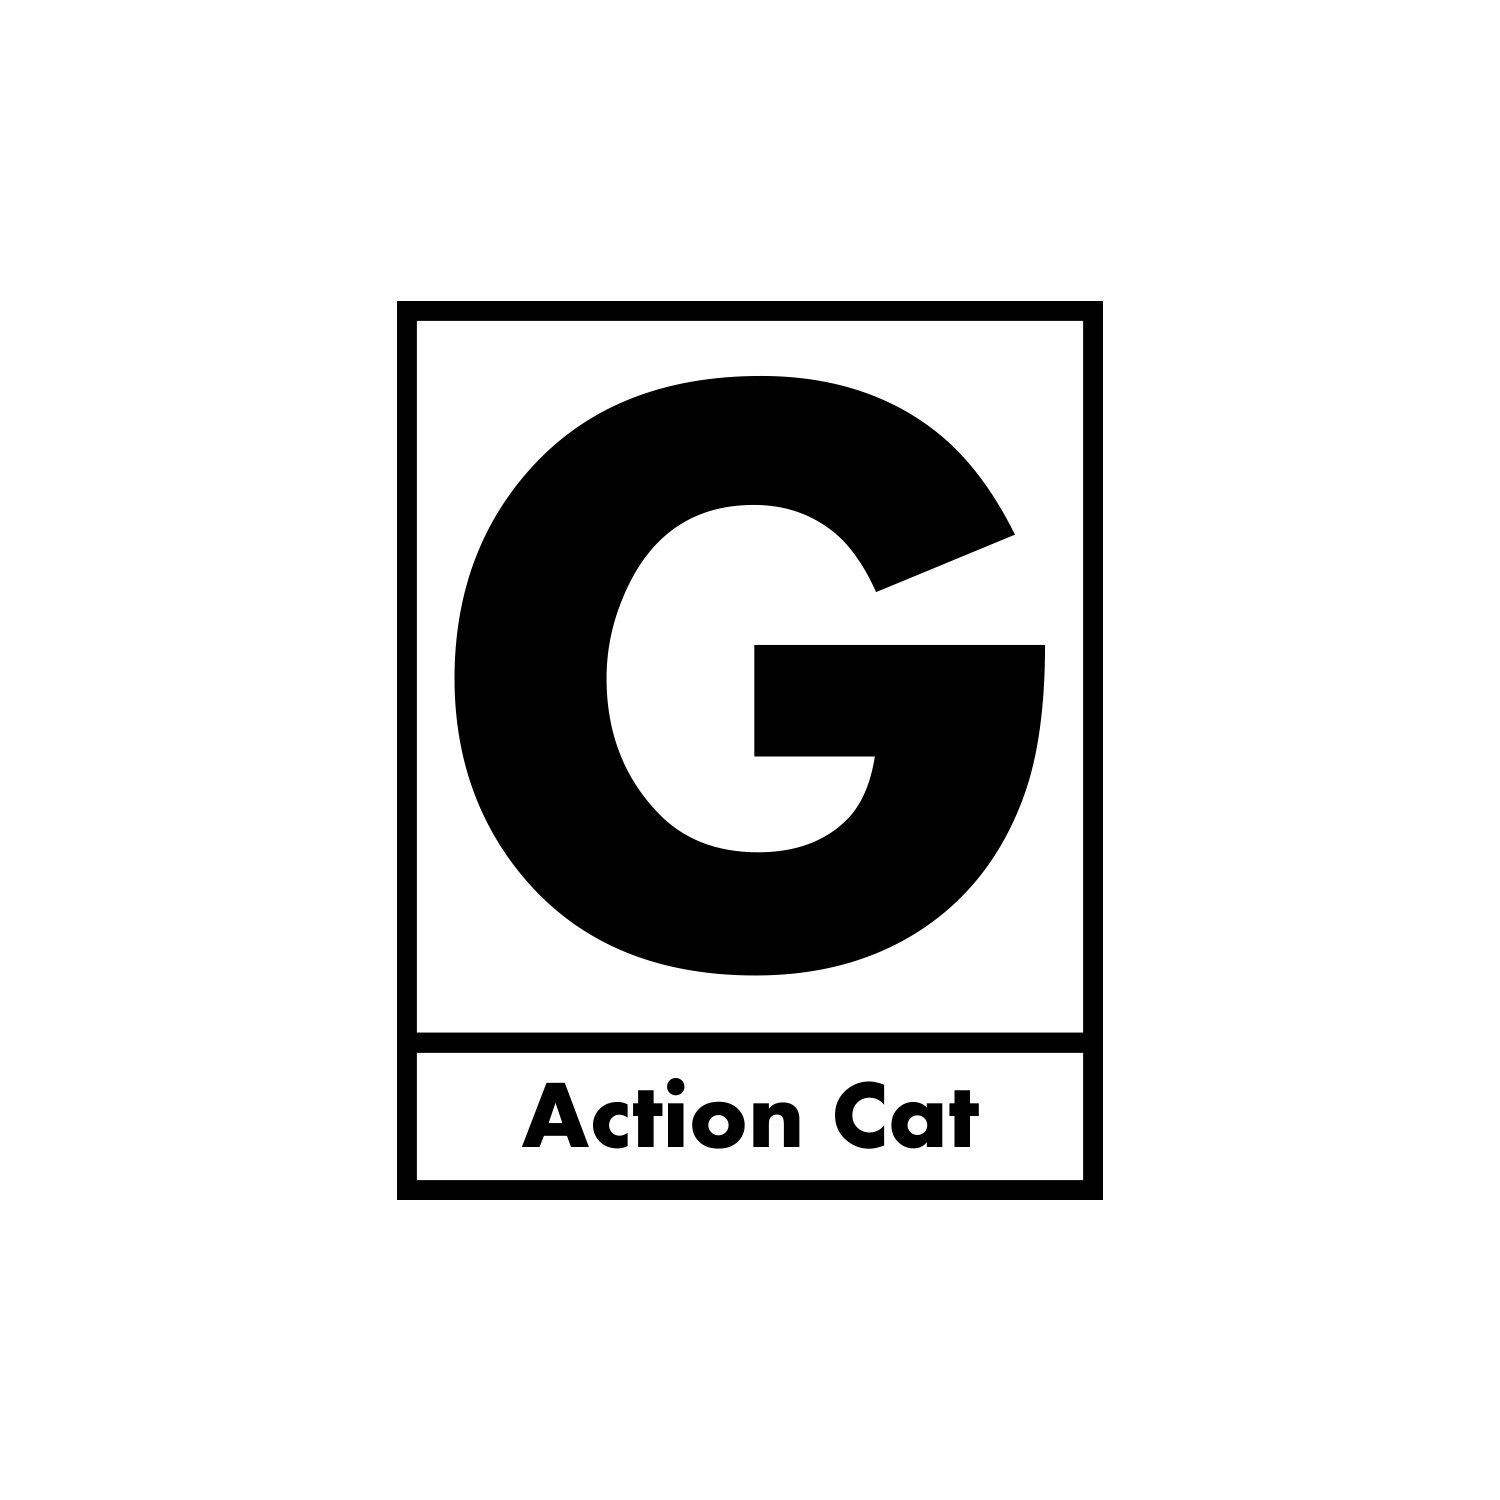 Action cat. Gerard way Cat. Логотип Джерард Уэй. Action Cat Gerard way перевод. Cat Action.